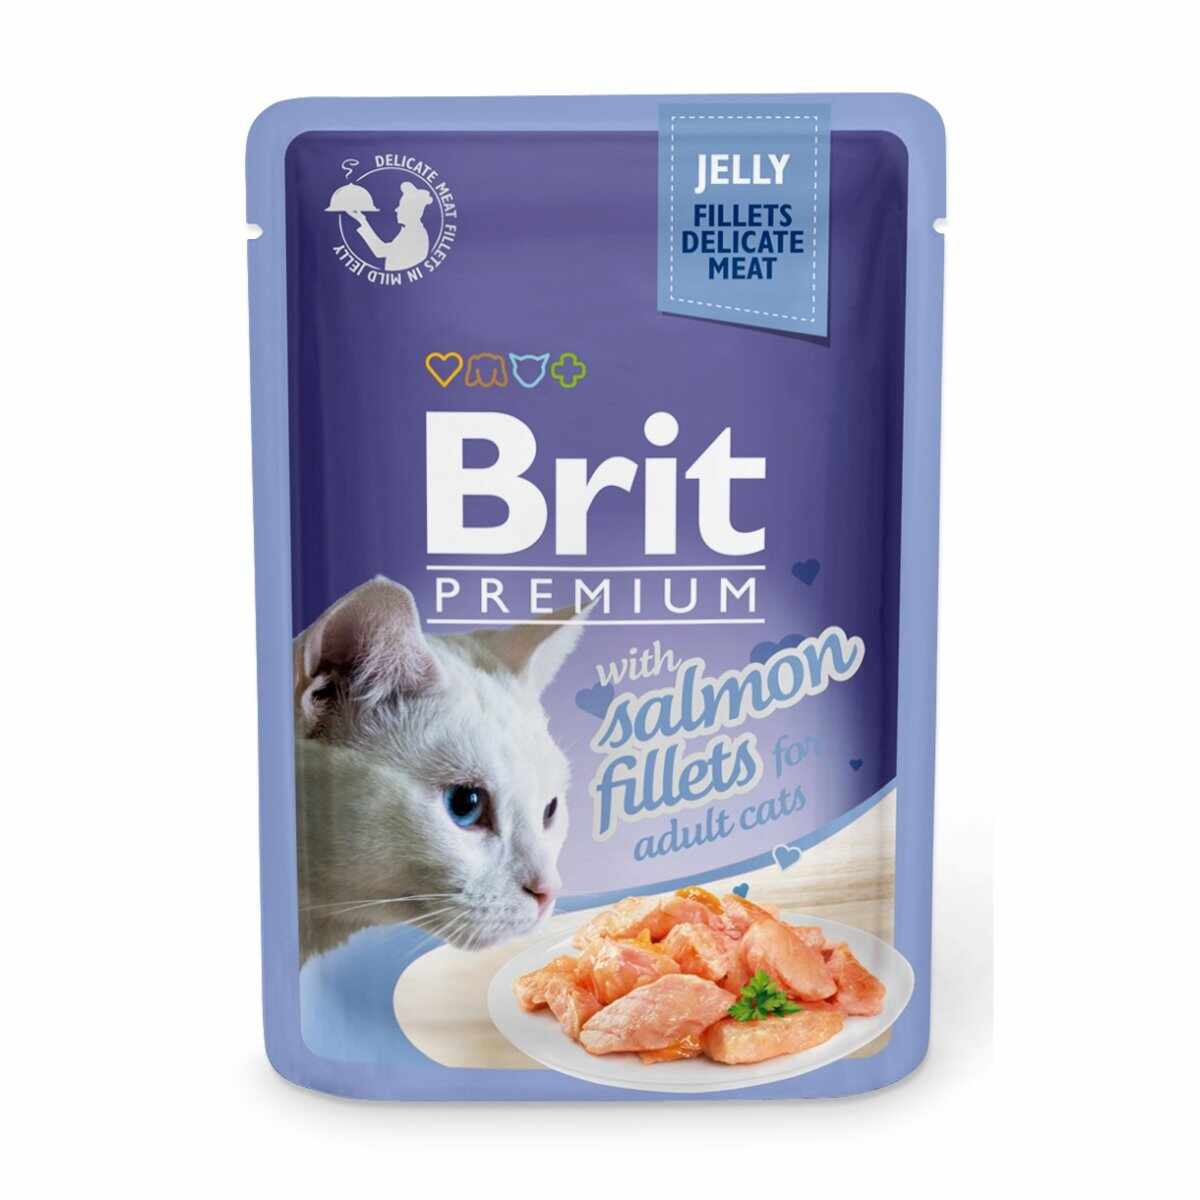 BRIT Premium, File Somon, plic hrană umedă pisici, (în aspic), 85g